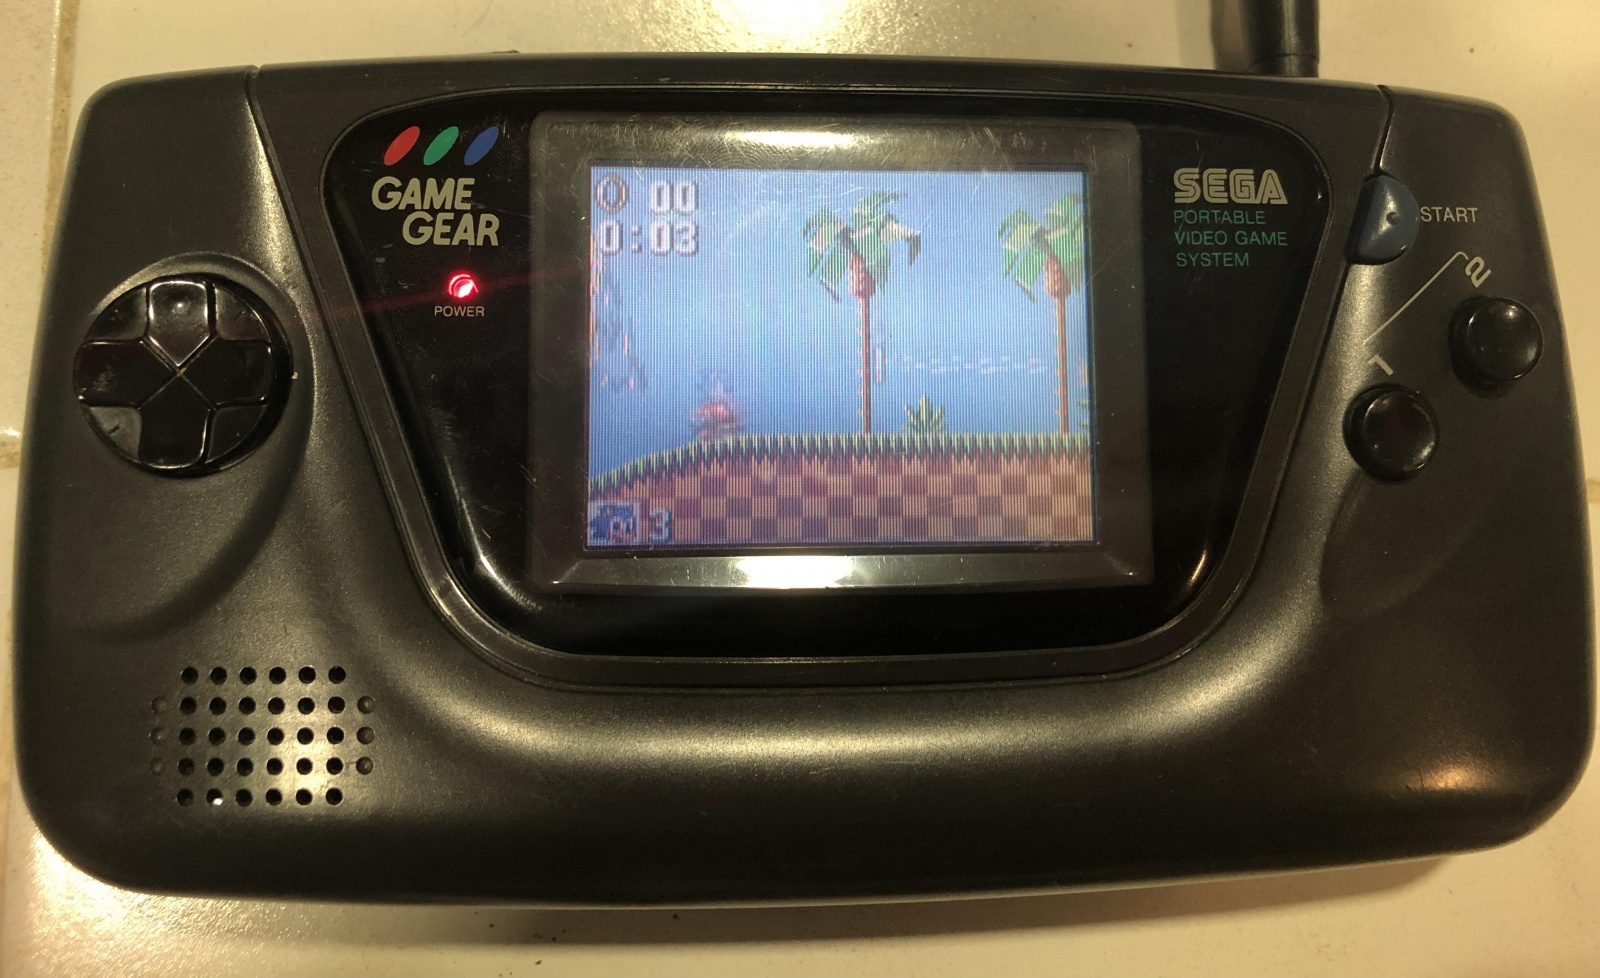 Sega Game Gear: портативная игровая консоль 90-х. Как электронный мусор превратить в работающий девайс - 1